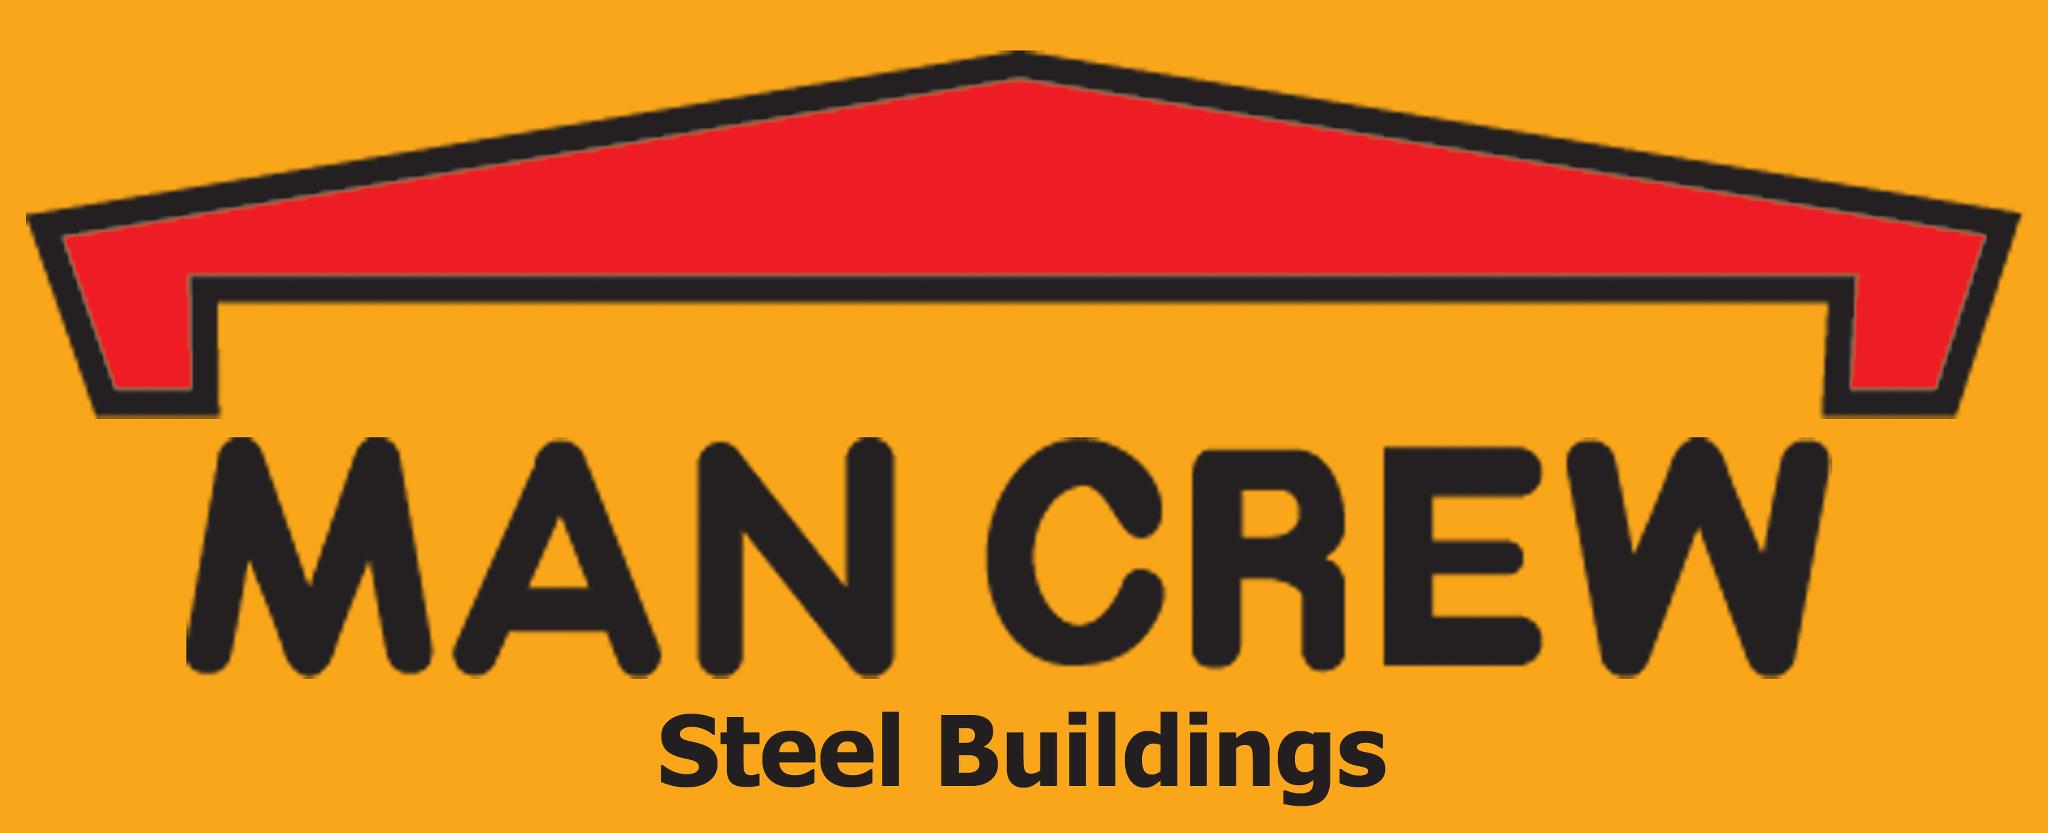 MANCREW Steel Buildings